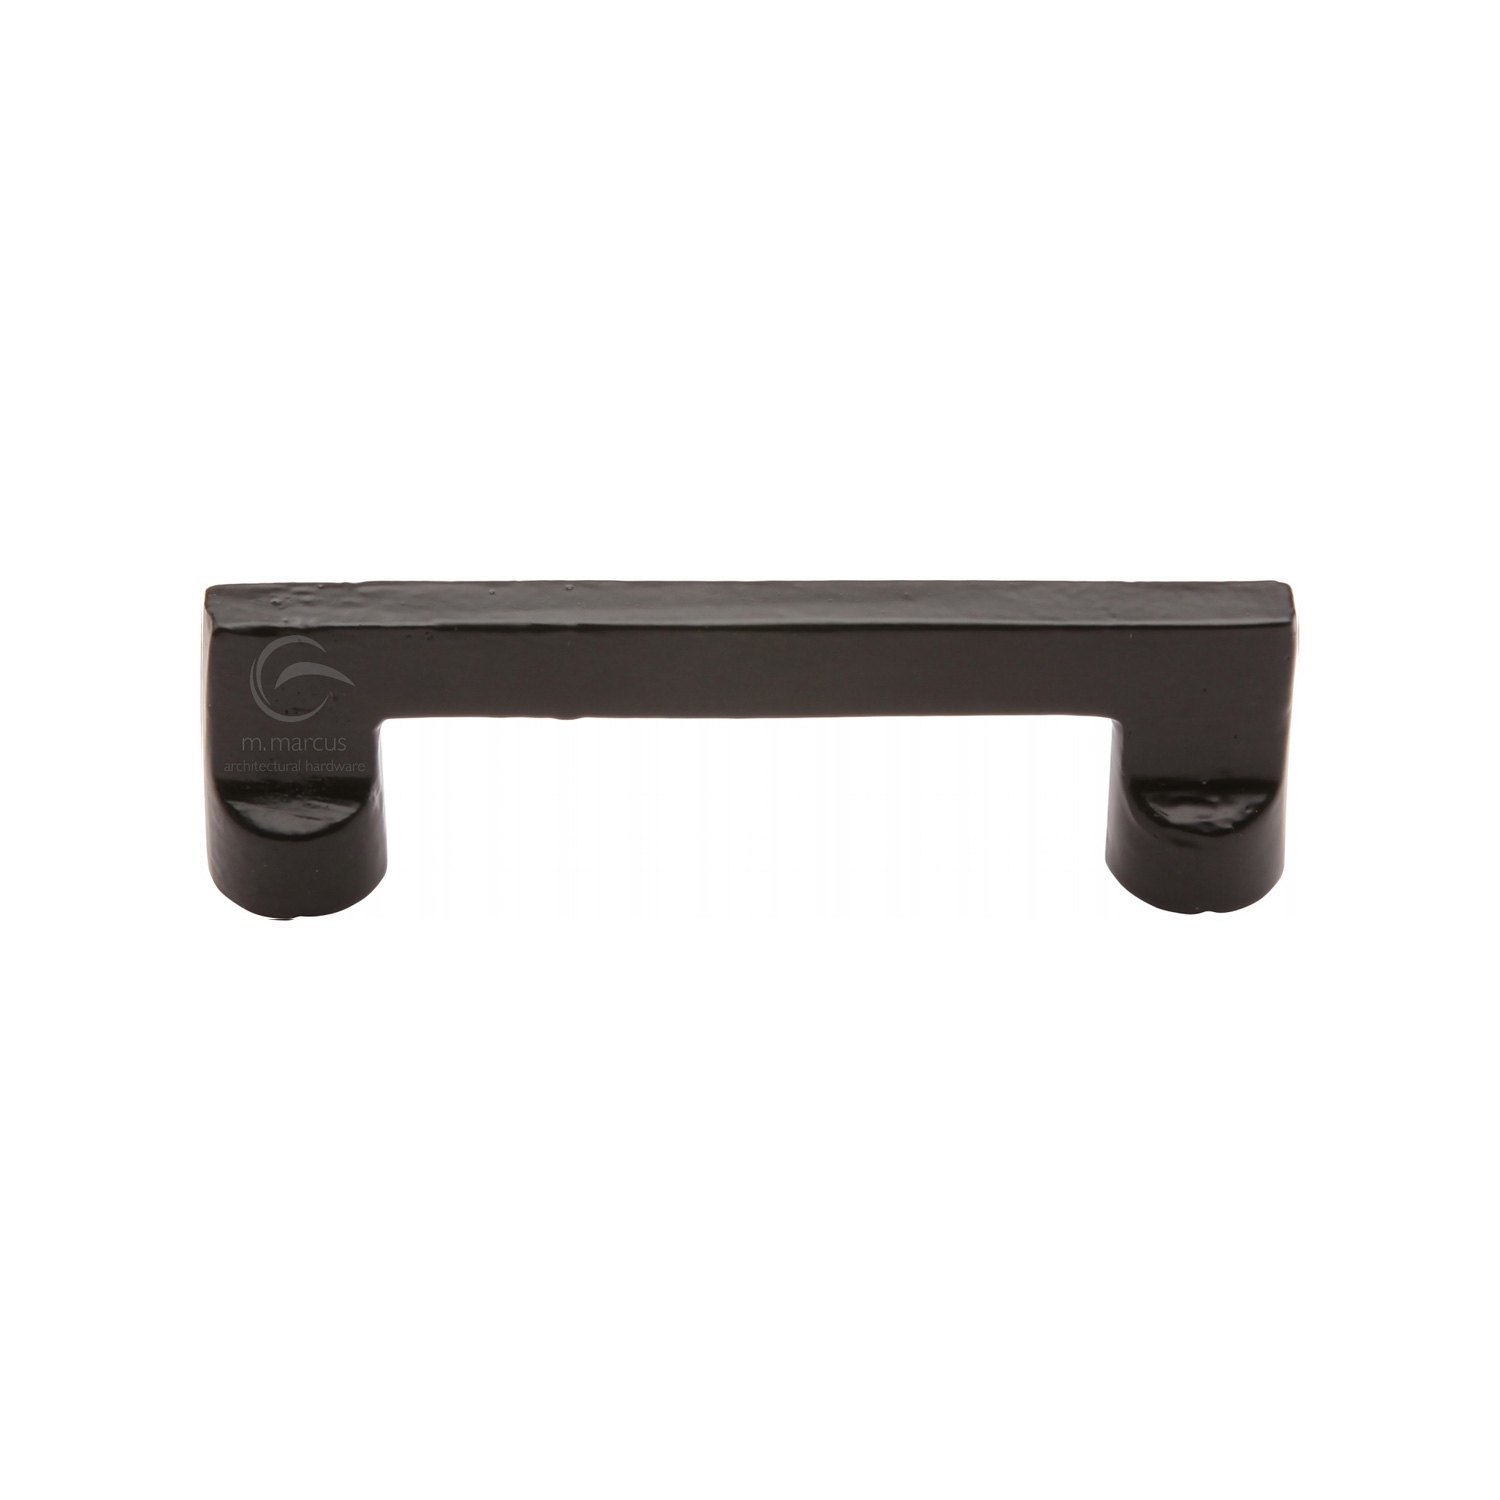 Black Iron Rustic Cabinet Pull Design 96mm c/c